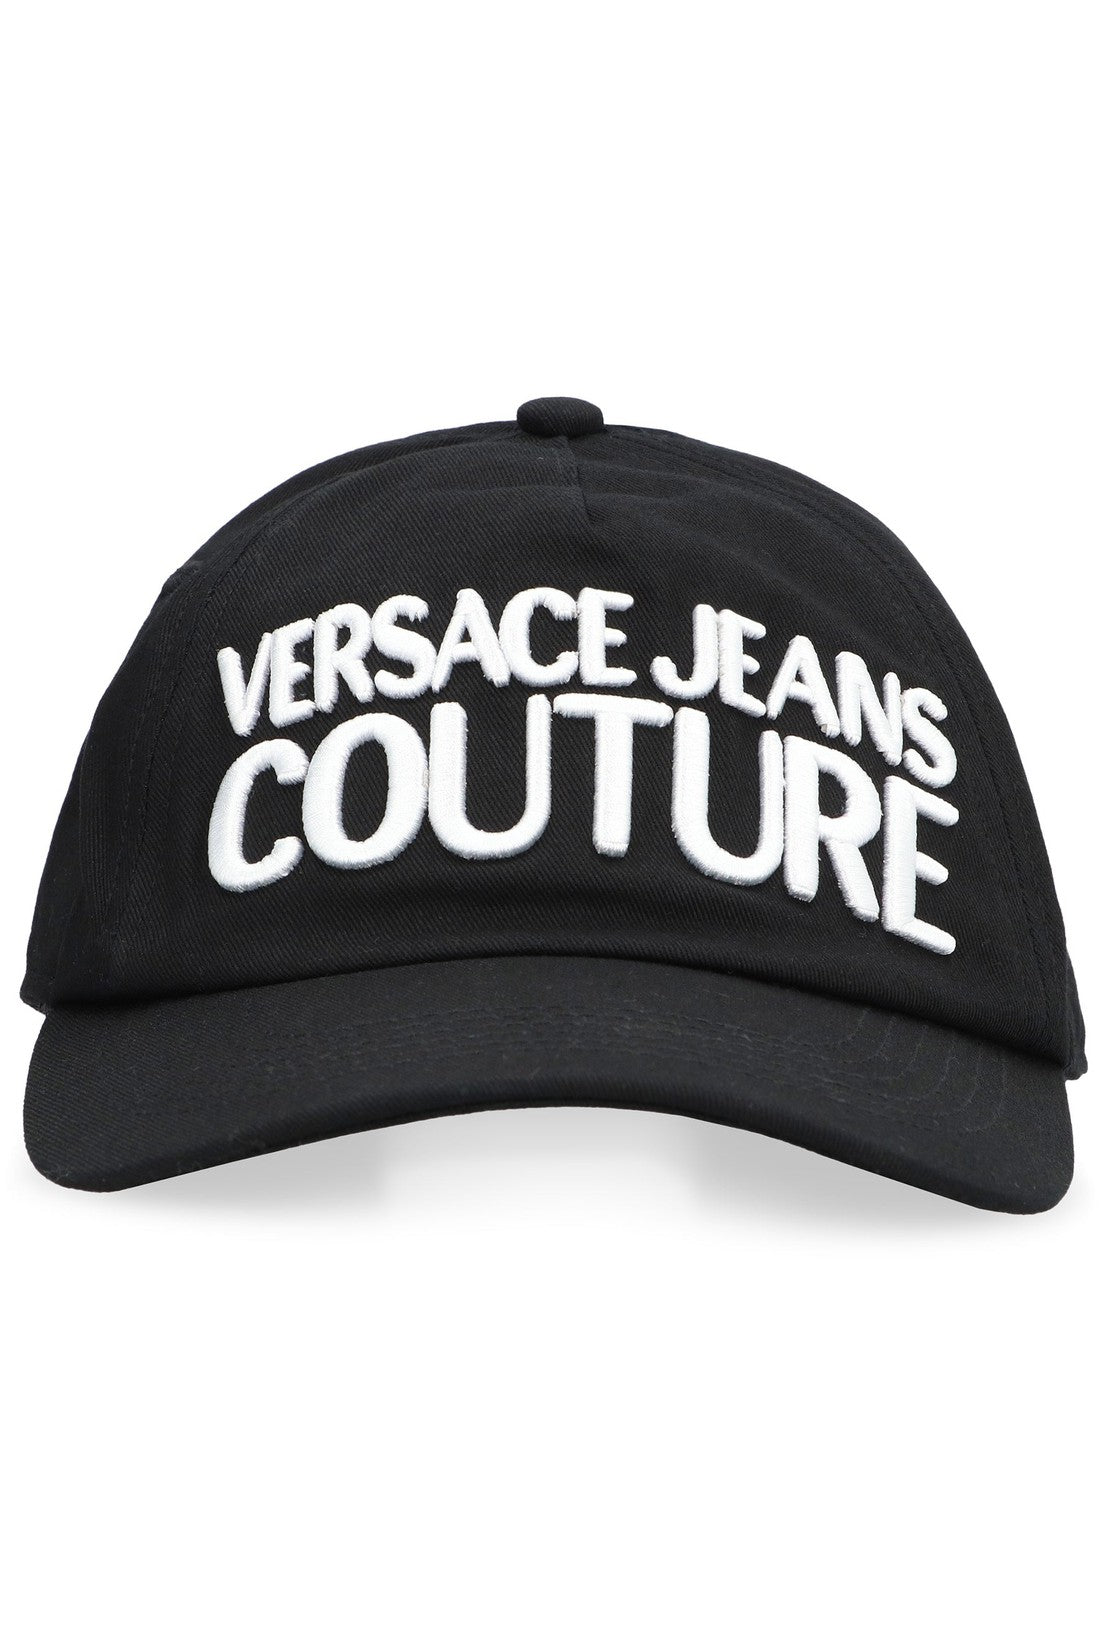 Versace-OUTLET-SALE-Logo baseball cap-ARCHIVIST